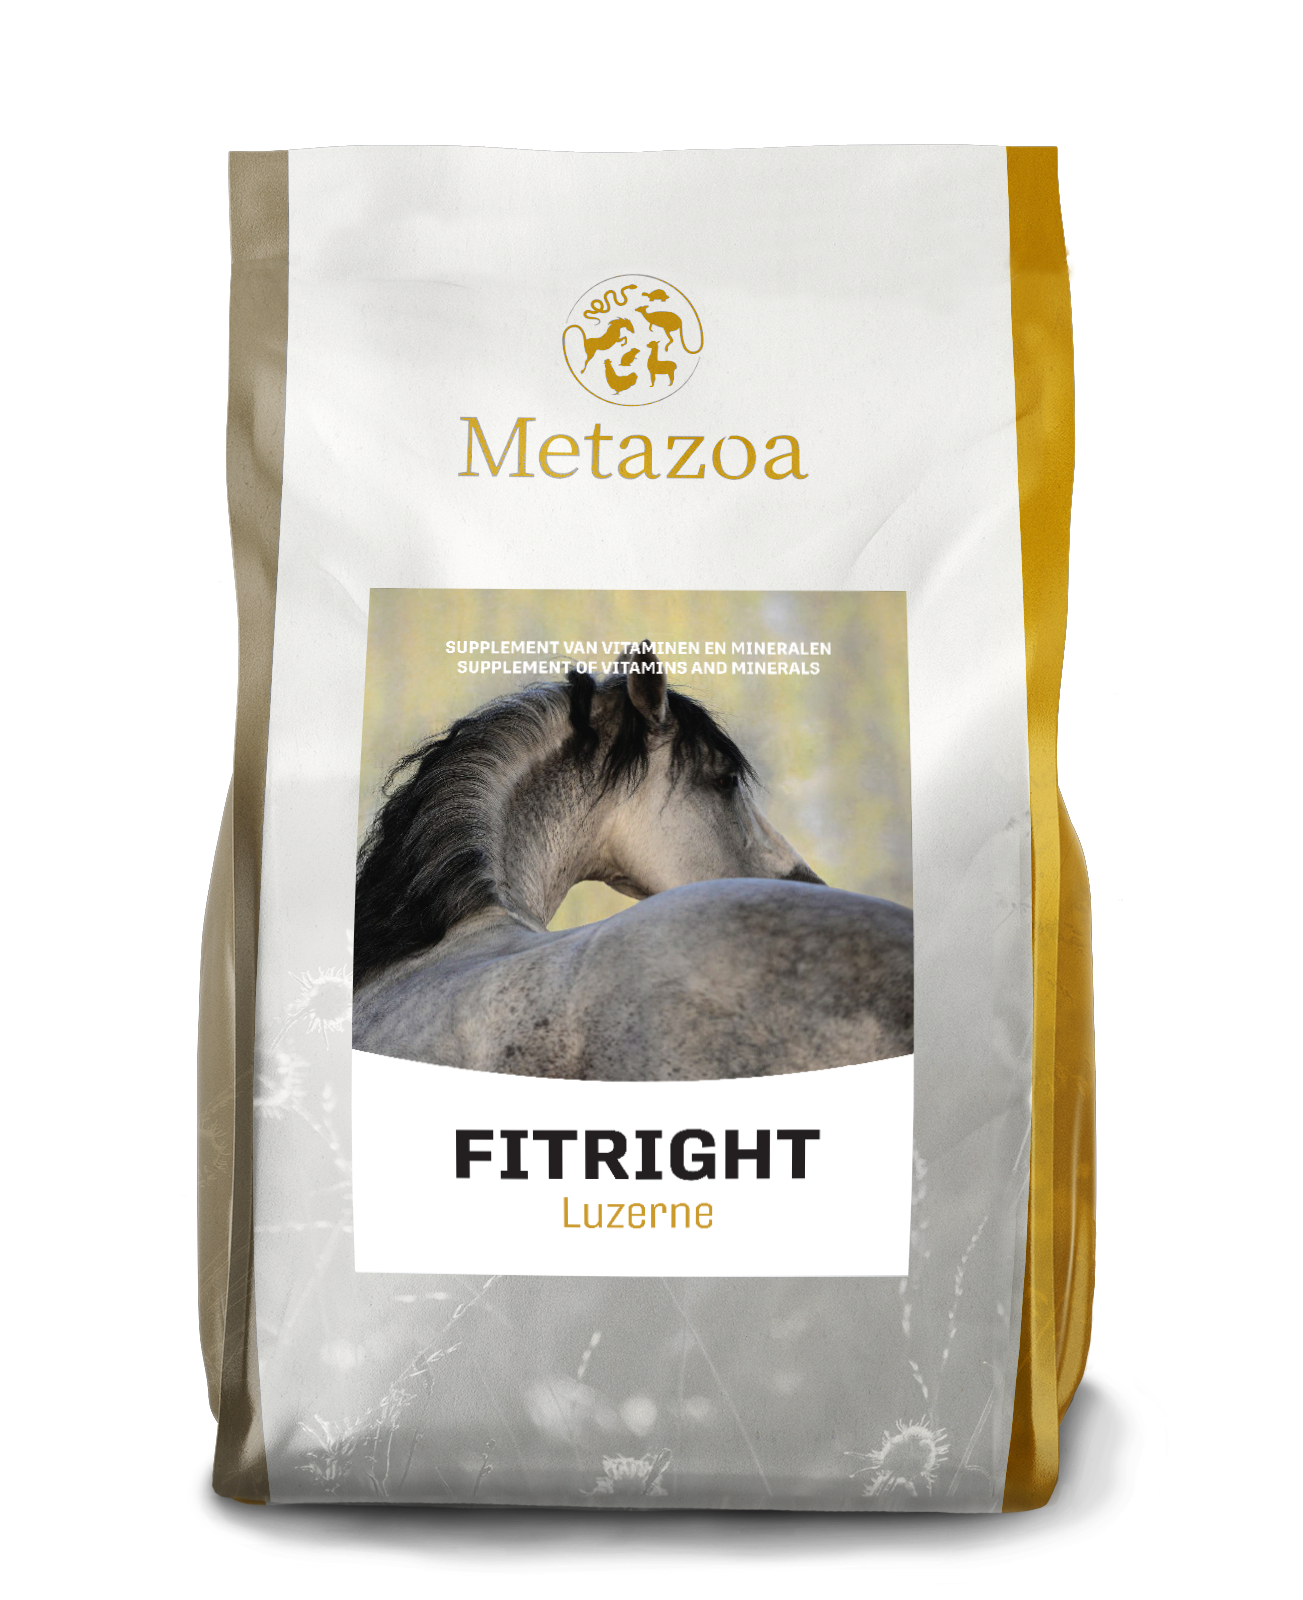 Download Metazoa FitRight luzerne verpakking 4kg EAN 4260176357209